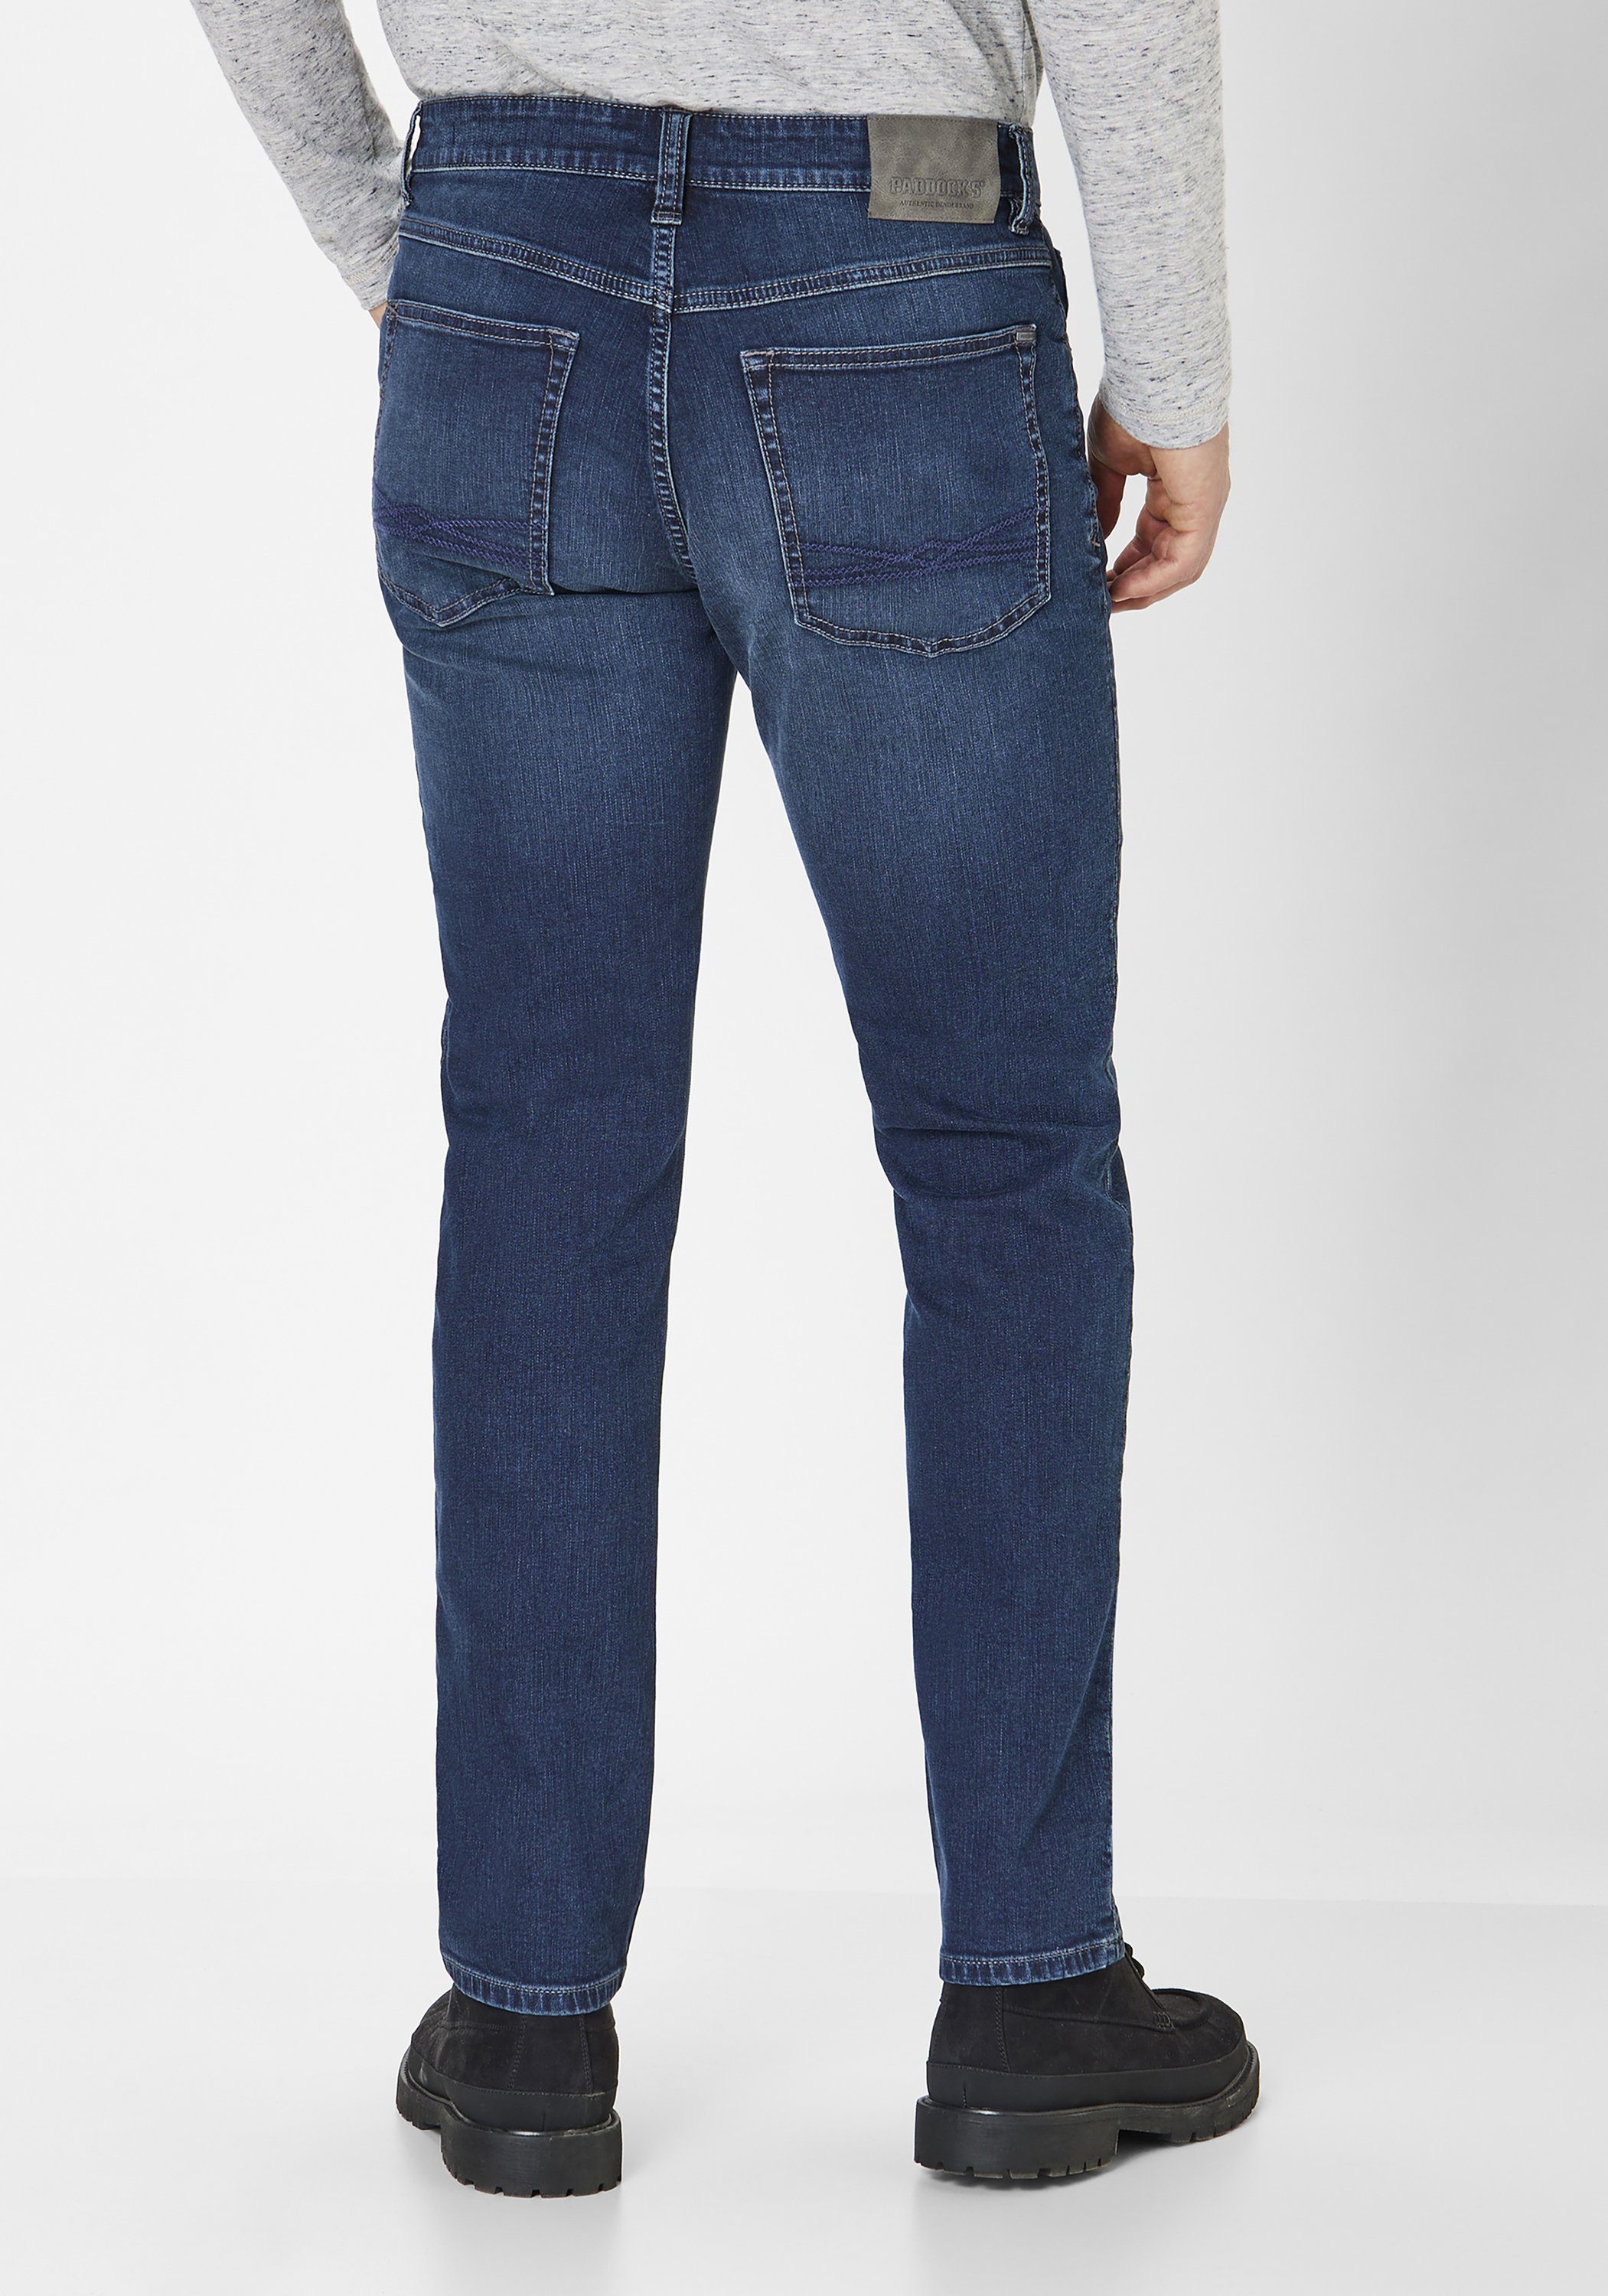 vintage Regular-fit-Jeans dark Straight-Fit wash Paddock's blue Jeans Regular 5-Pocket BEN